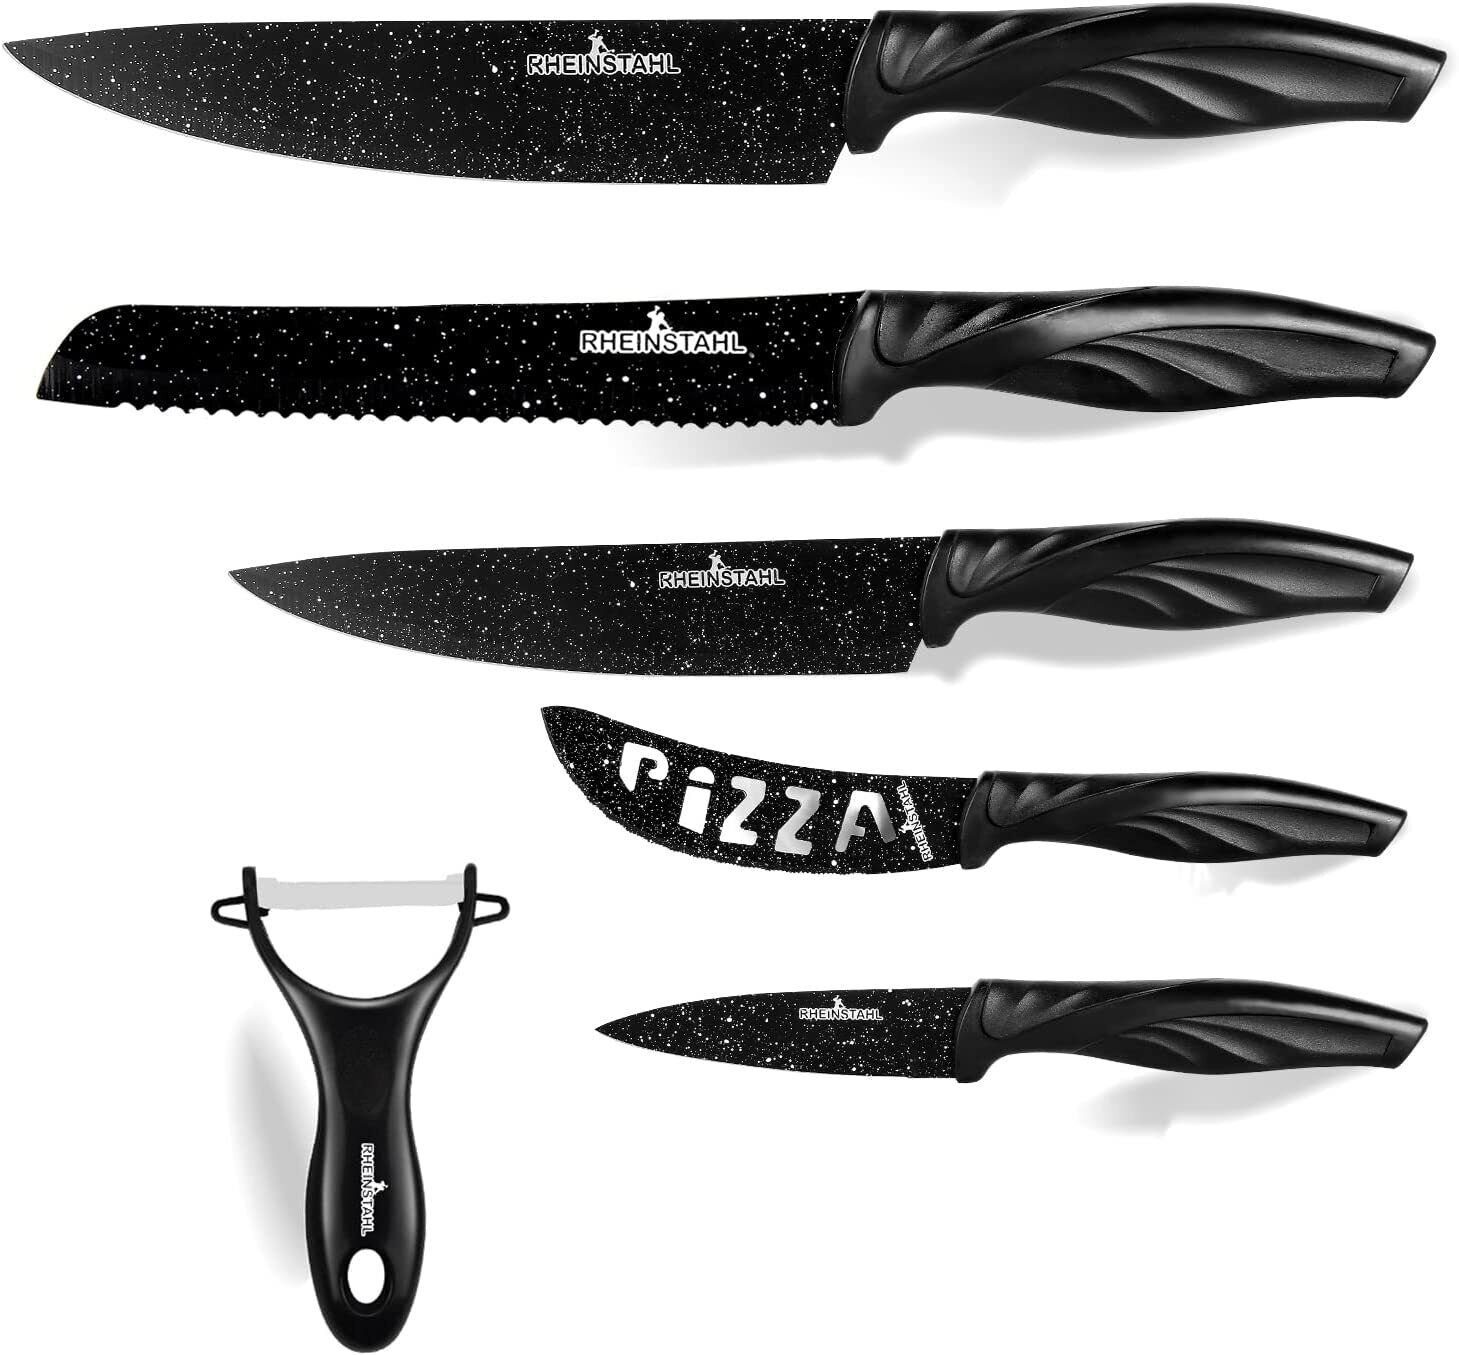 RHEINSTAHL Messer-Set 6-teilig- Edelstahl küchenmesser set mit Geschenkbox, Edelstahl + Antihaft, Profi knife set Messerset inkl. Schäler Schwarz